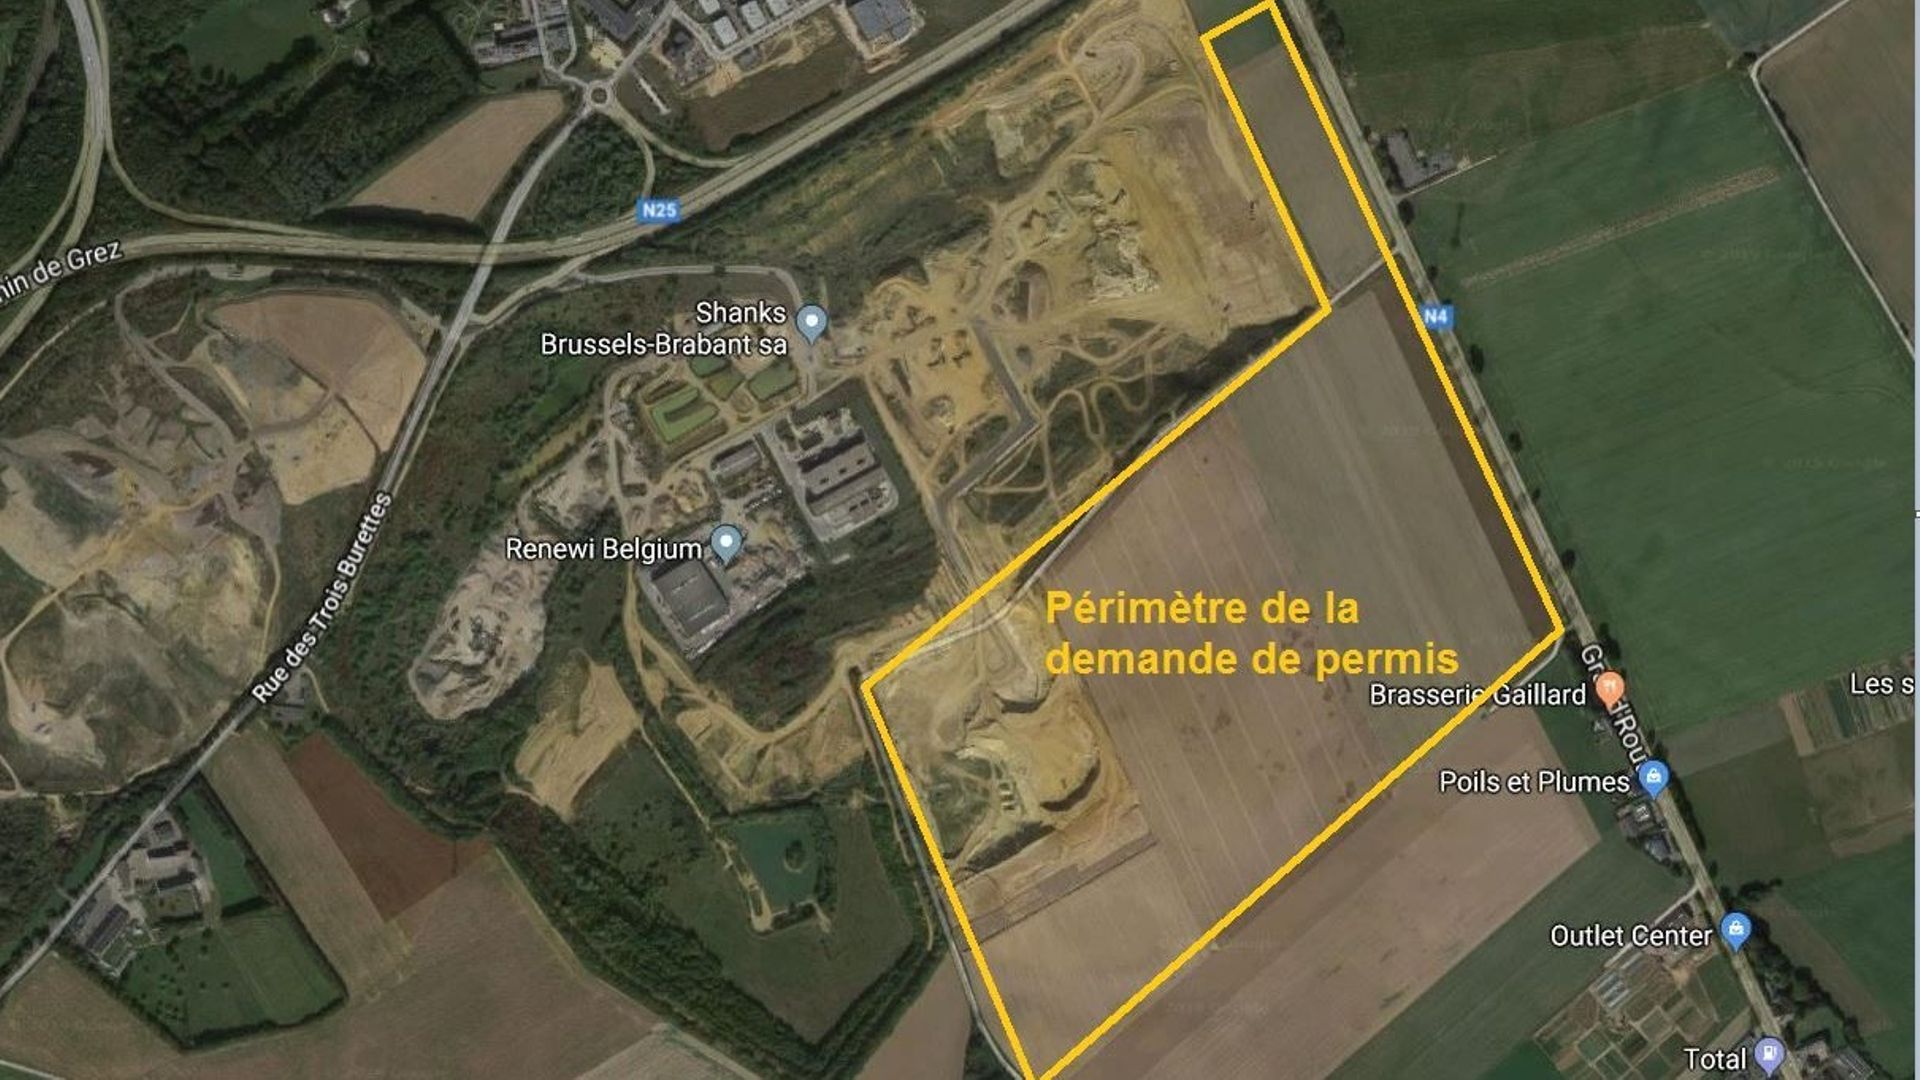 La zone concernée par le permis s'étend sur 47 hectares.